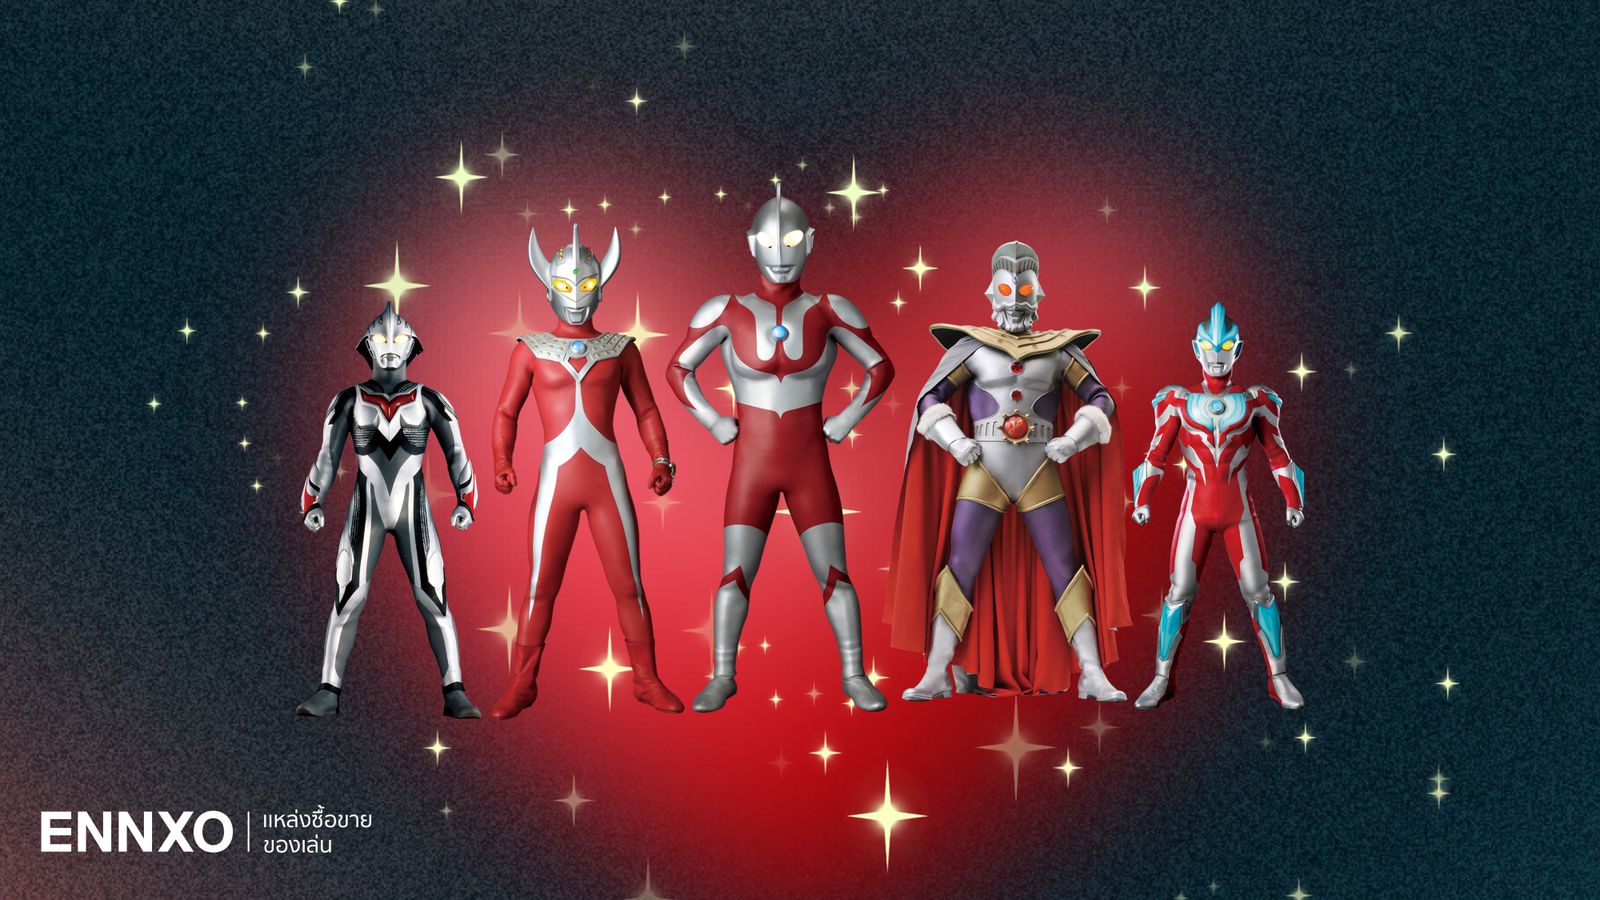 รวมอุลตร้าแมน (Ultraman) ทั้งหมด มีกี่ตัว ชื่ออะไรบ้าง